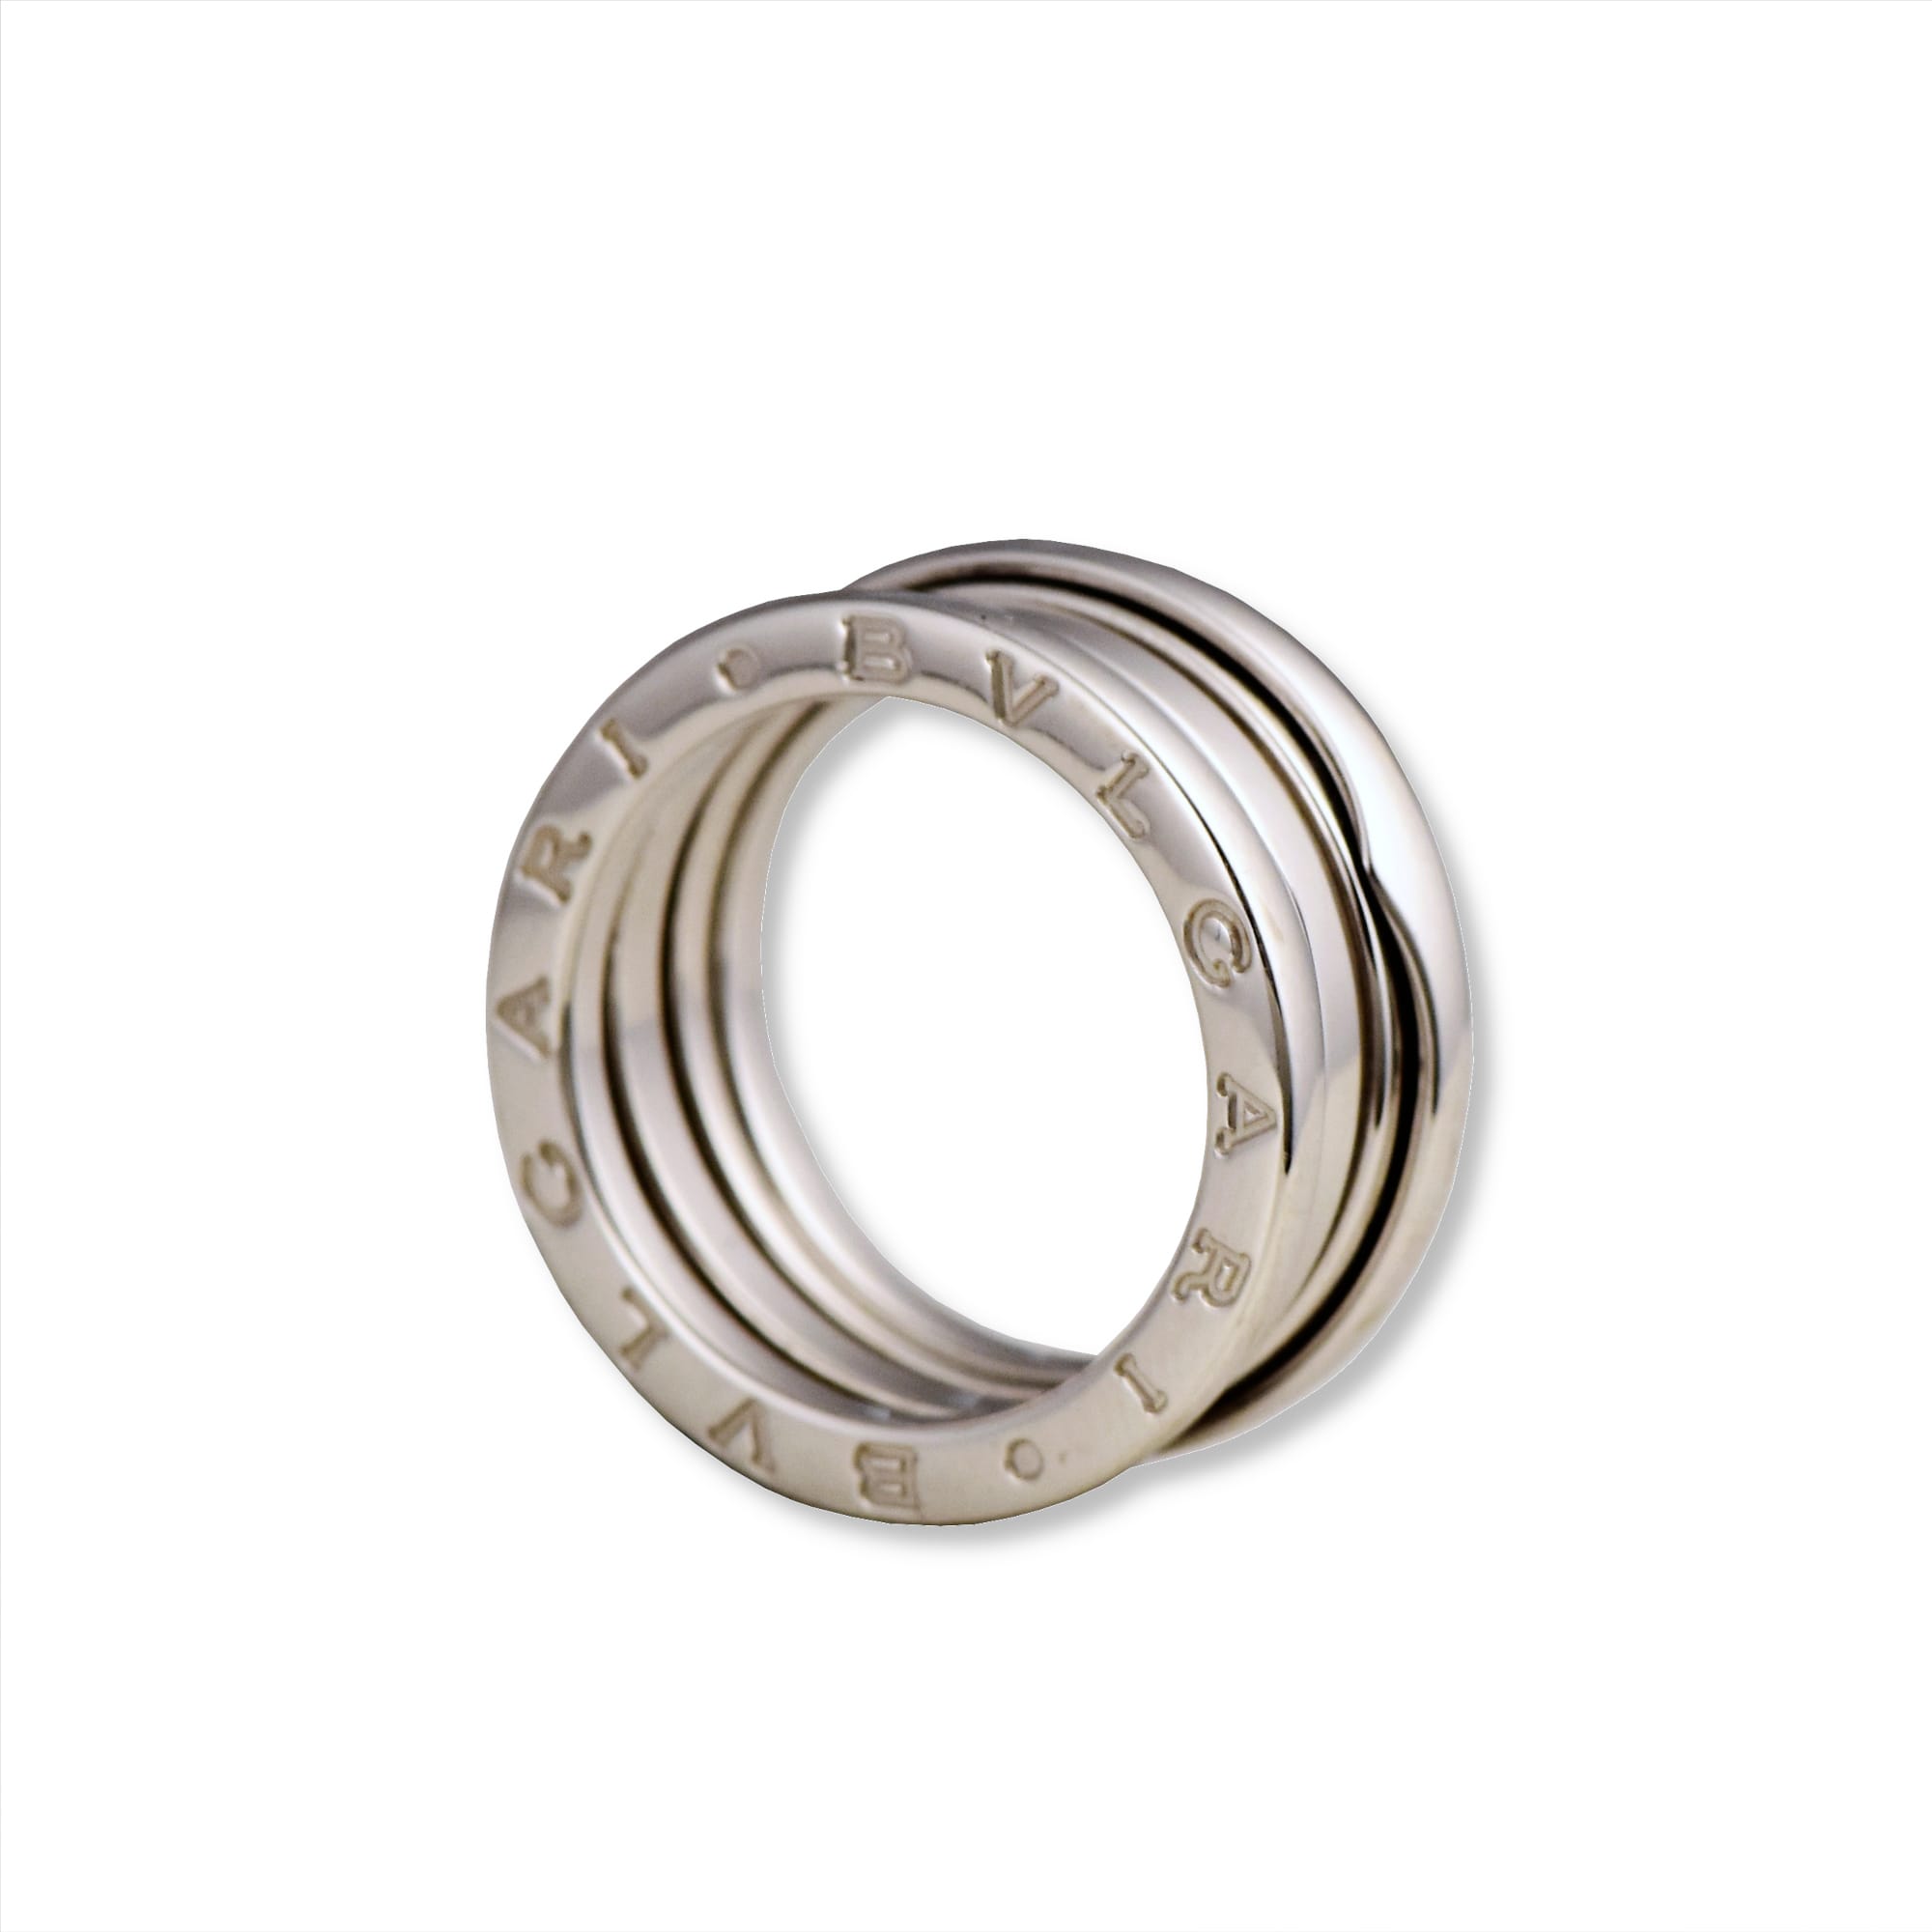 AUTHENTIC BVLGARI BVLGARI B.zero1 2-Band Ring in 18K White GOLD, Size 50 -  Brilliance Jewels